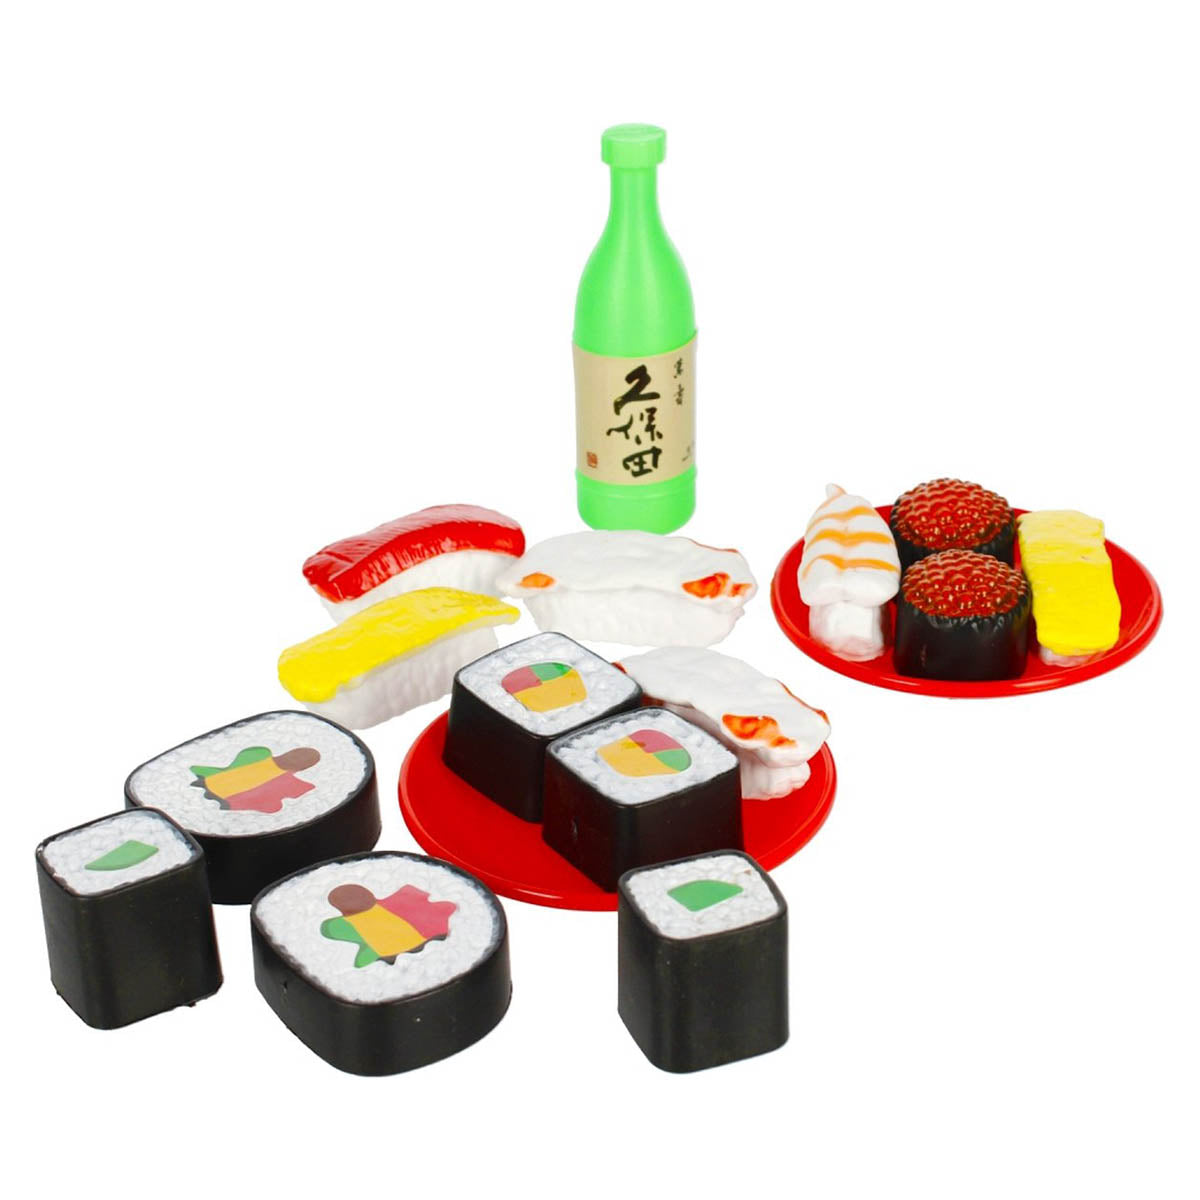 Ariko Speelgoed Sushi set - met Bestek, Dienblad en Sojabakje